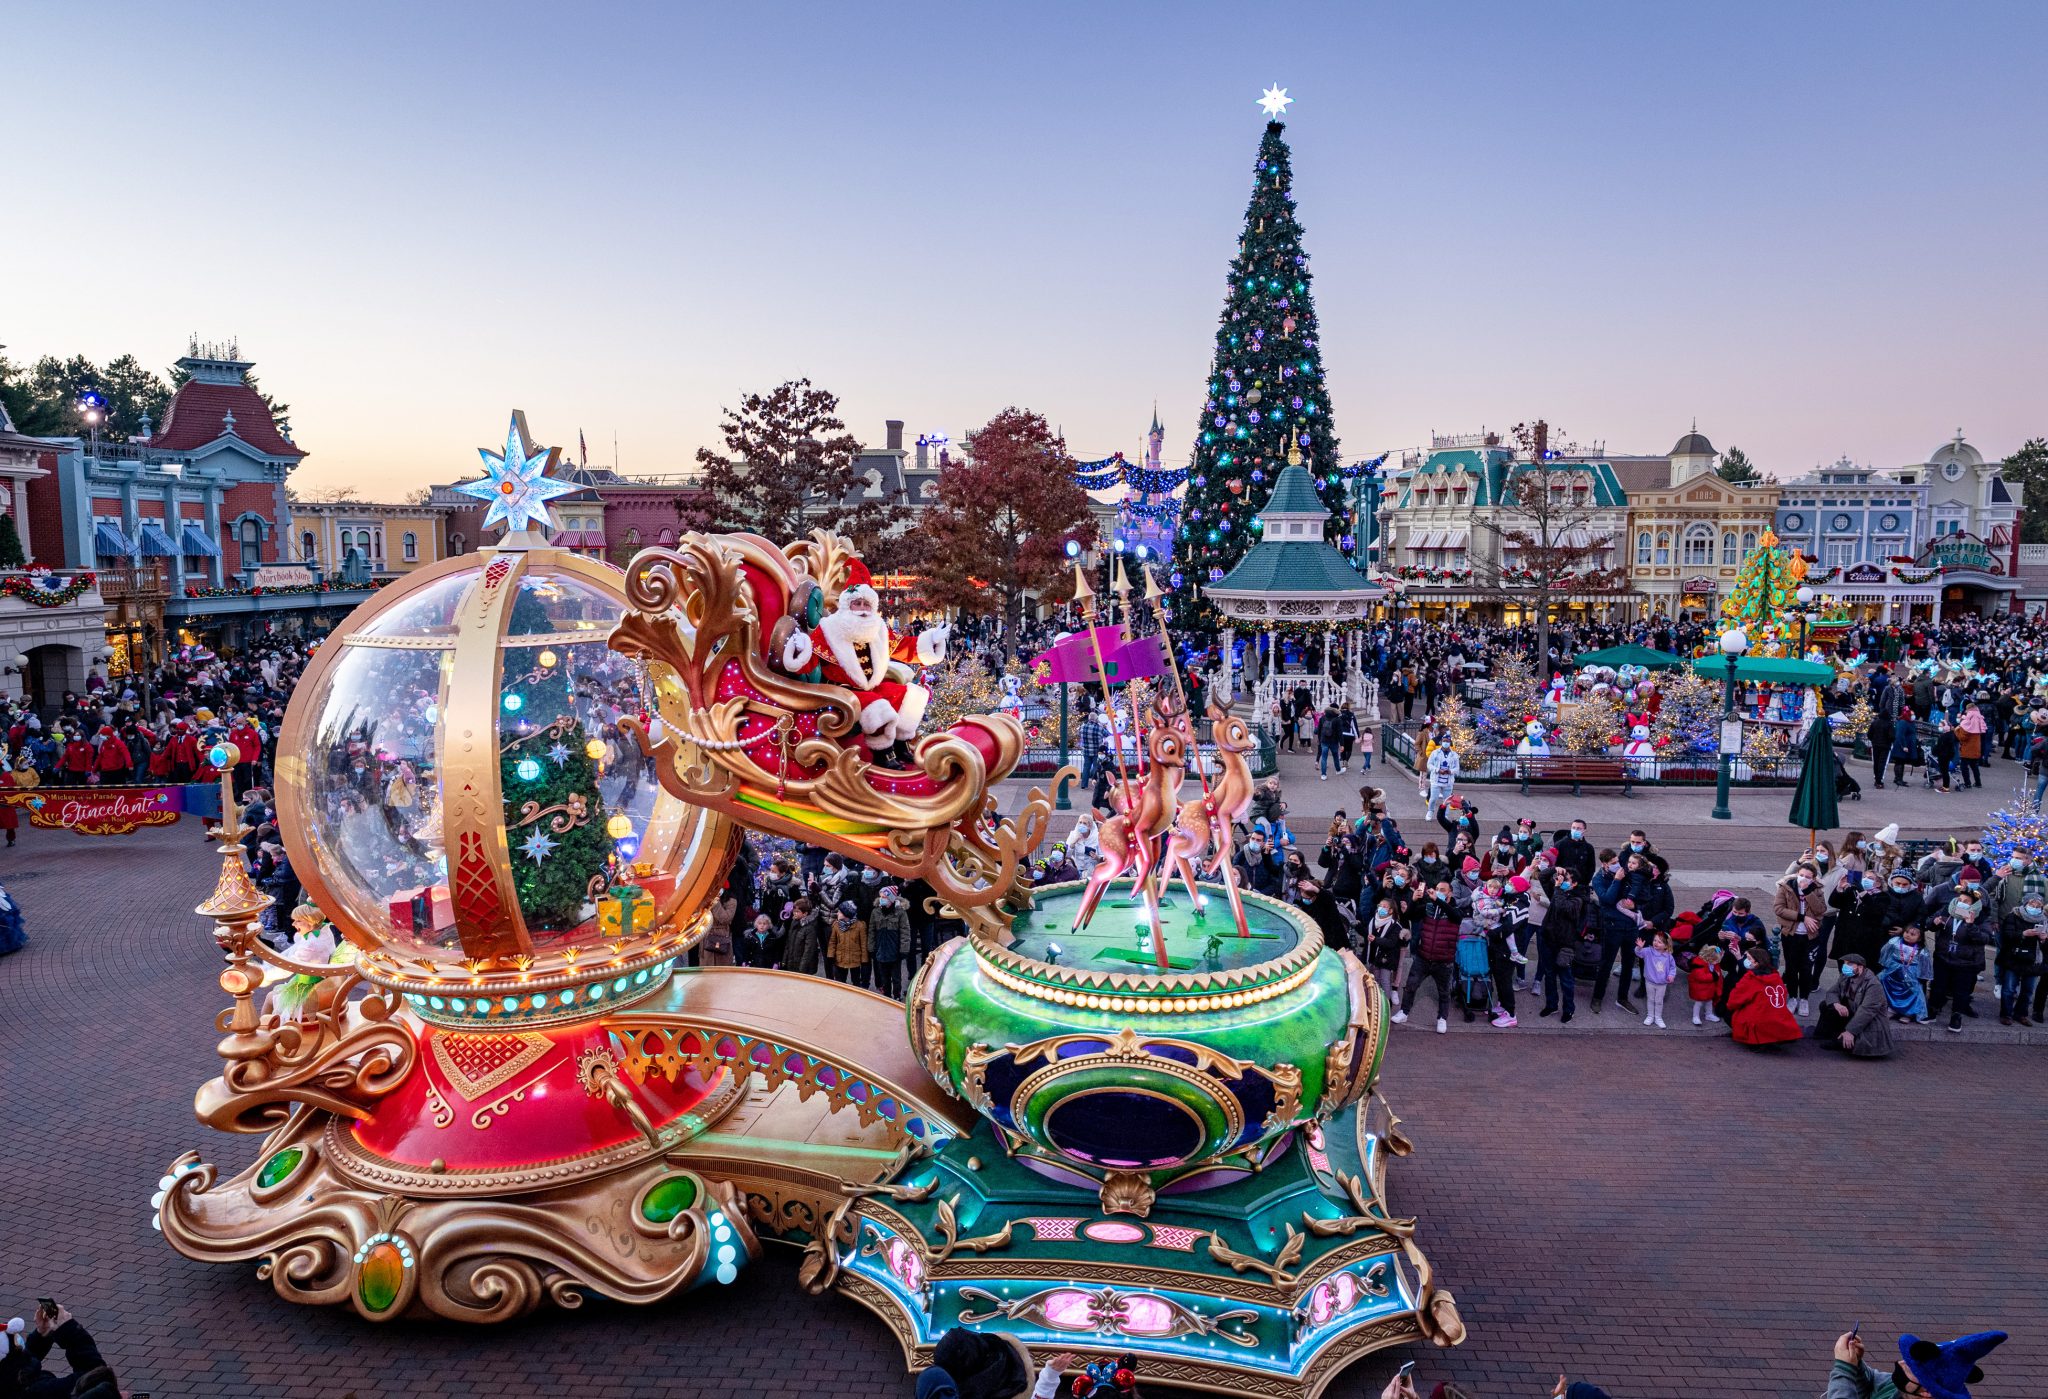 Estreia de novo desfile traz a magia ao natal da Disneyland Paris